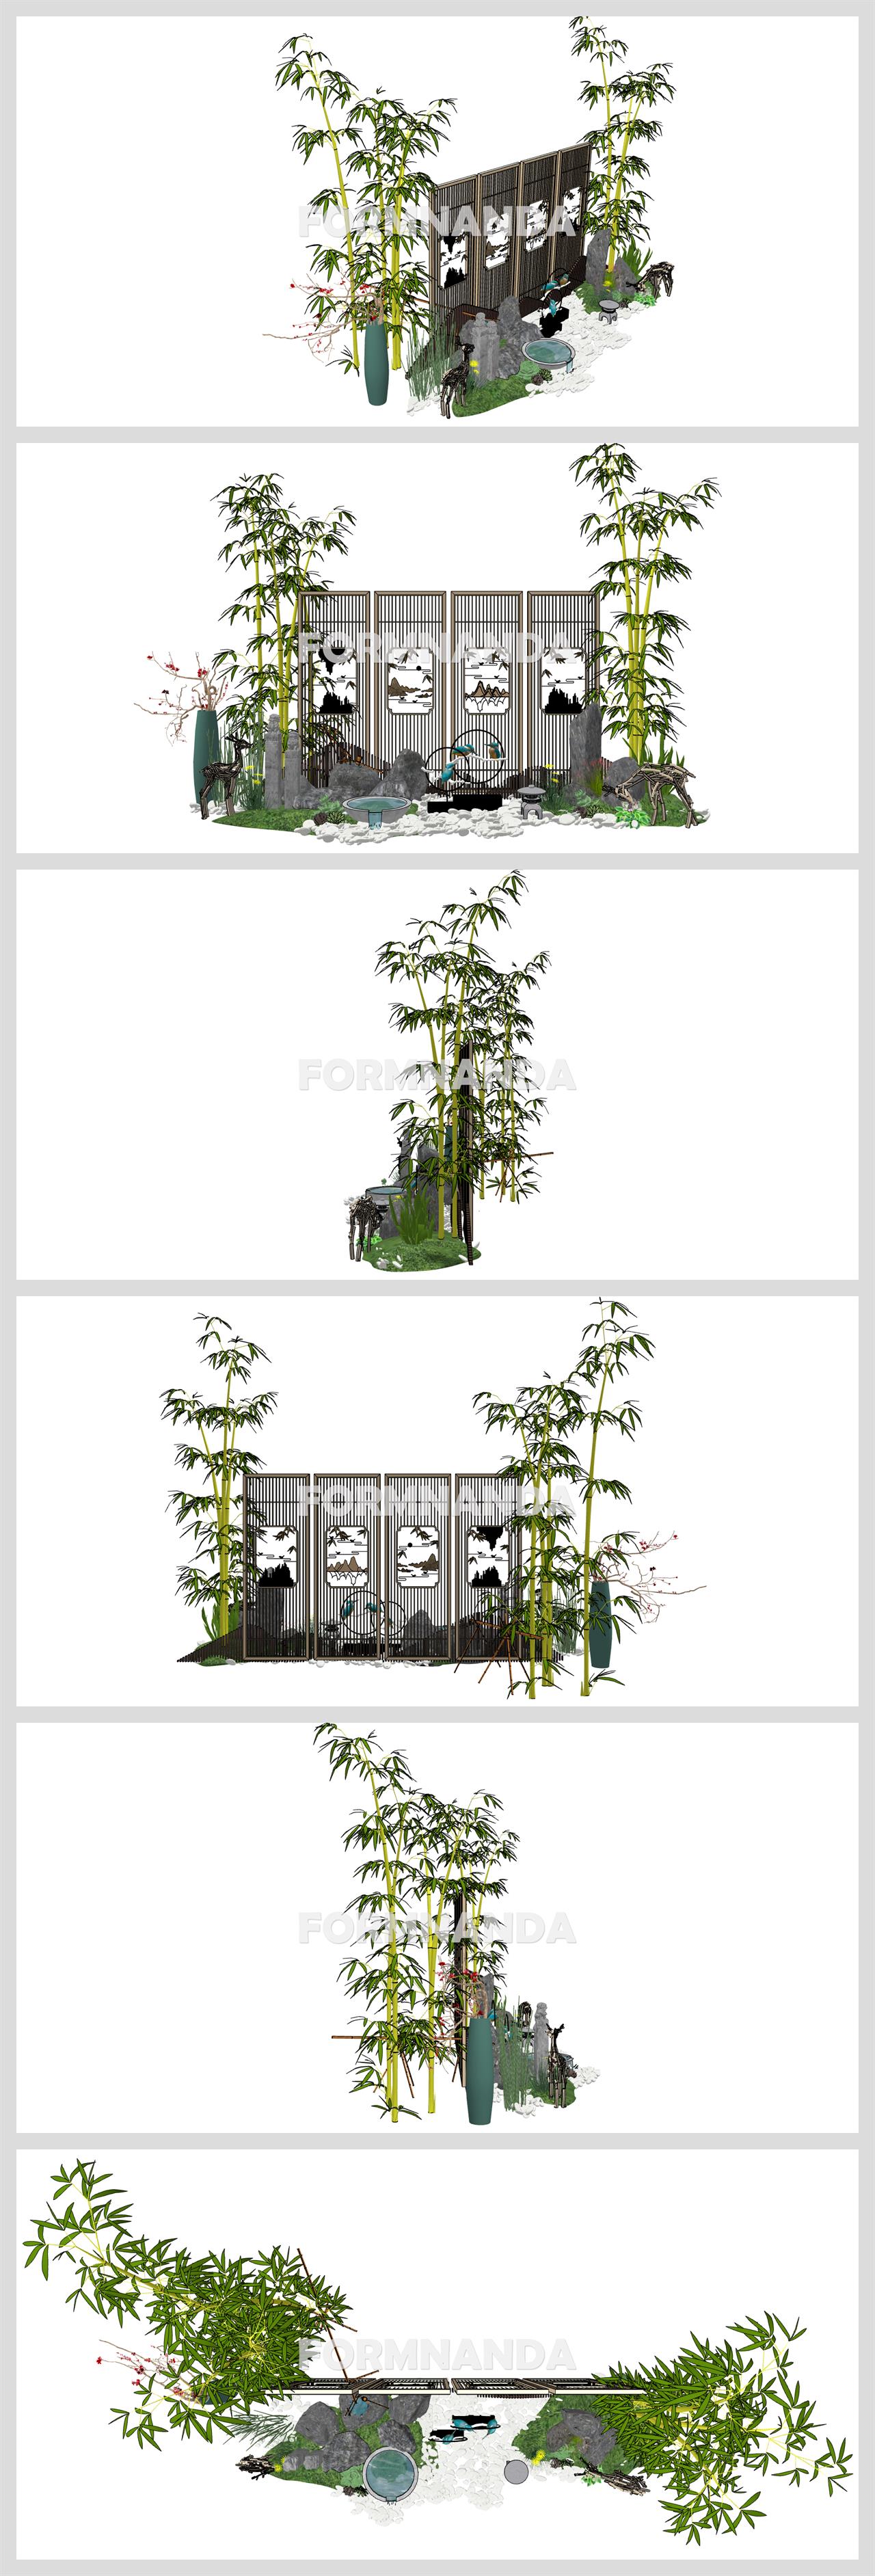 현대적인 정원조경 환경 Sketchup 모델 만들기 상세보기